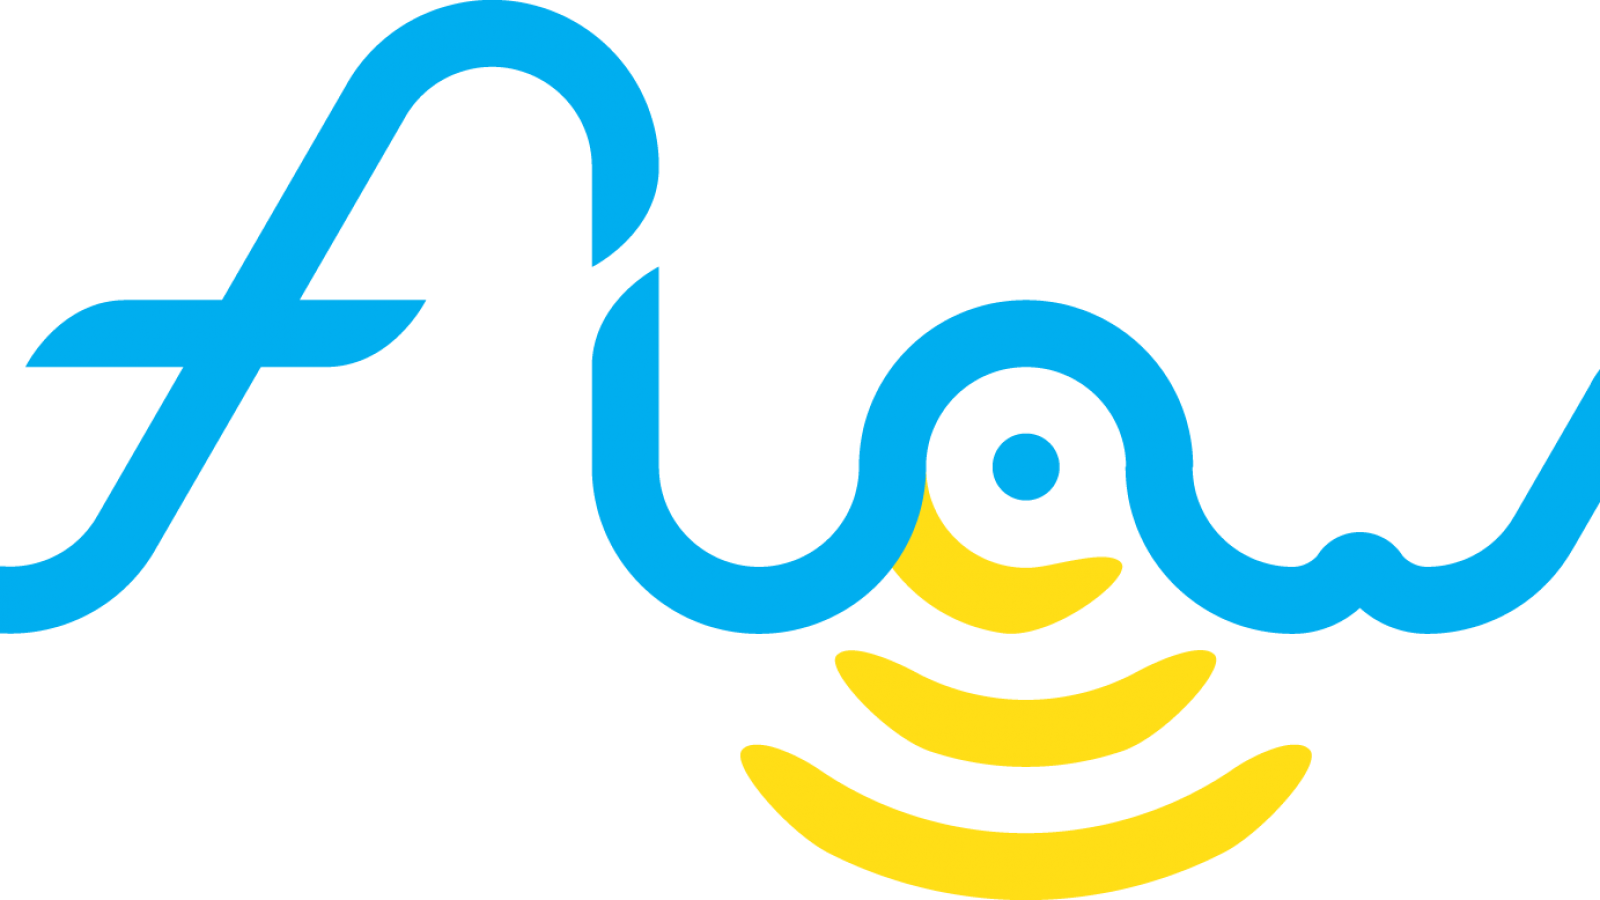 logo_kleur